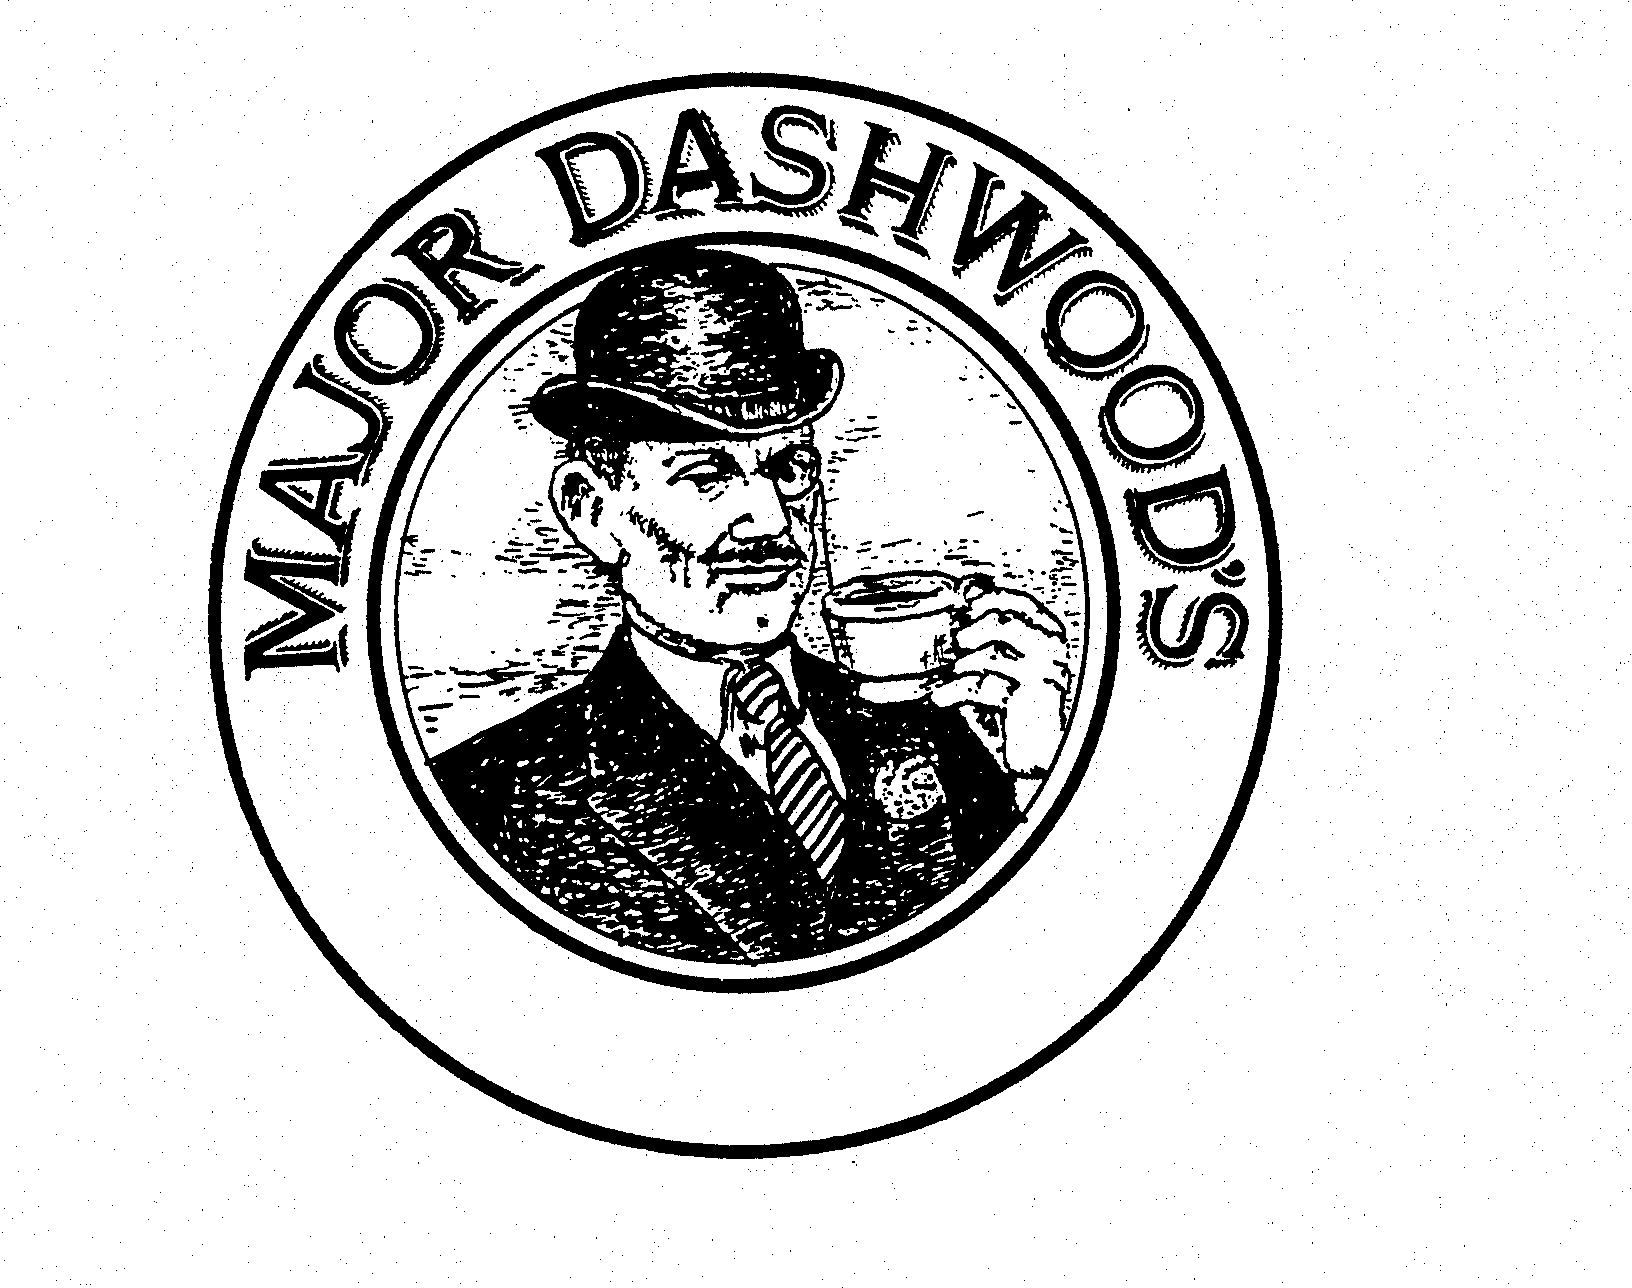  MAJOR DASHWOOD'S